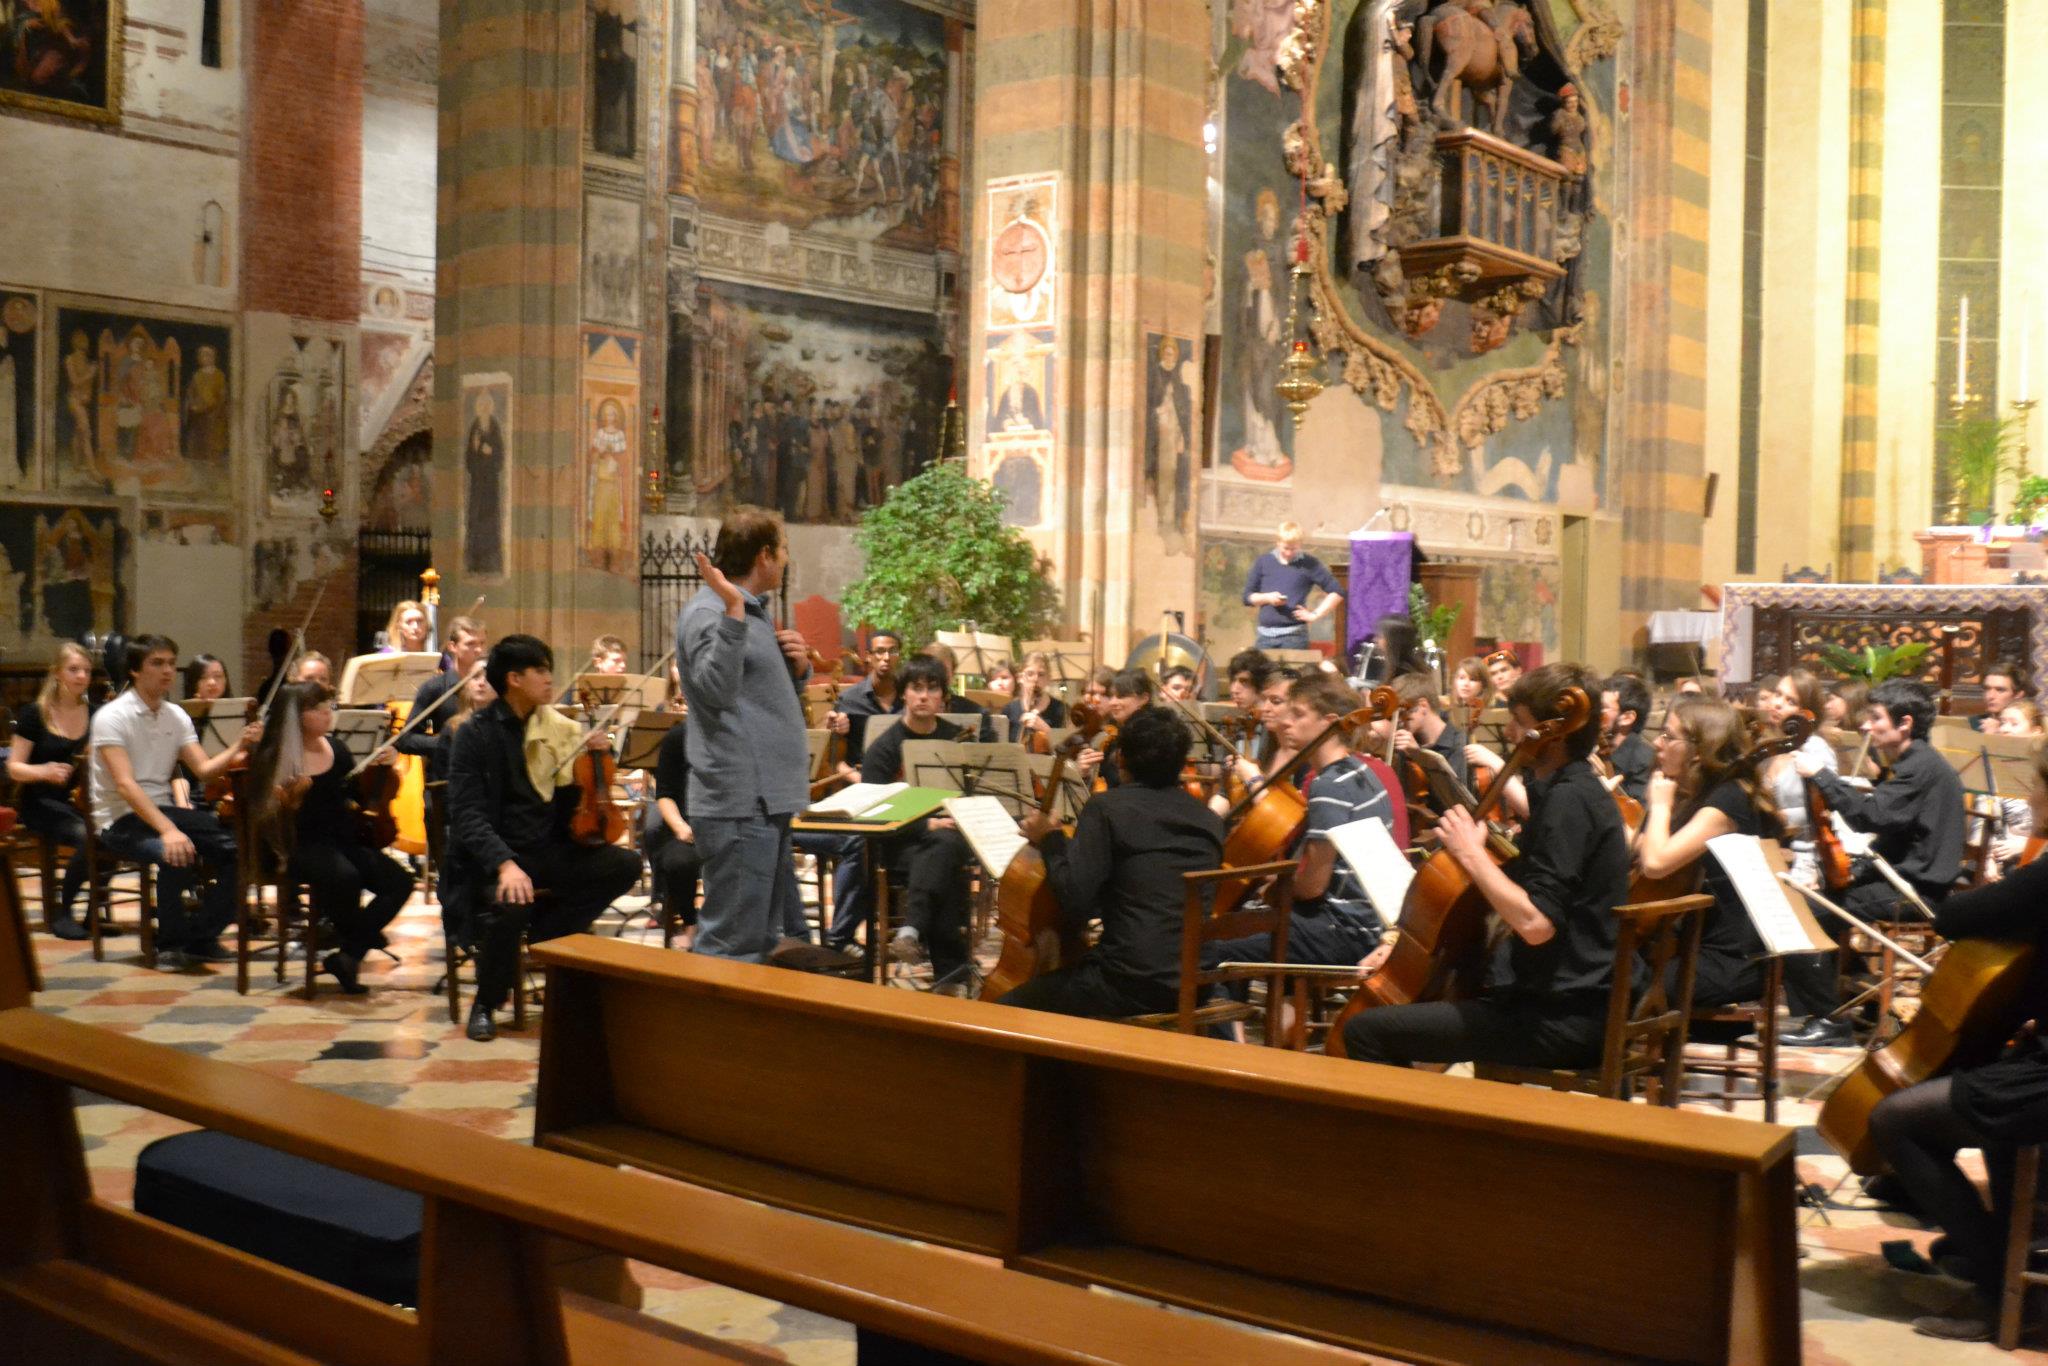 Rehearsing with the Durham University Symphony Orchestra at the Santa Anastasia Church in Verona, Italy